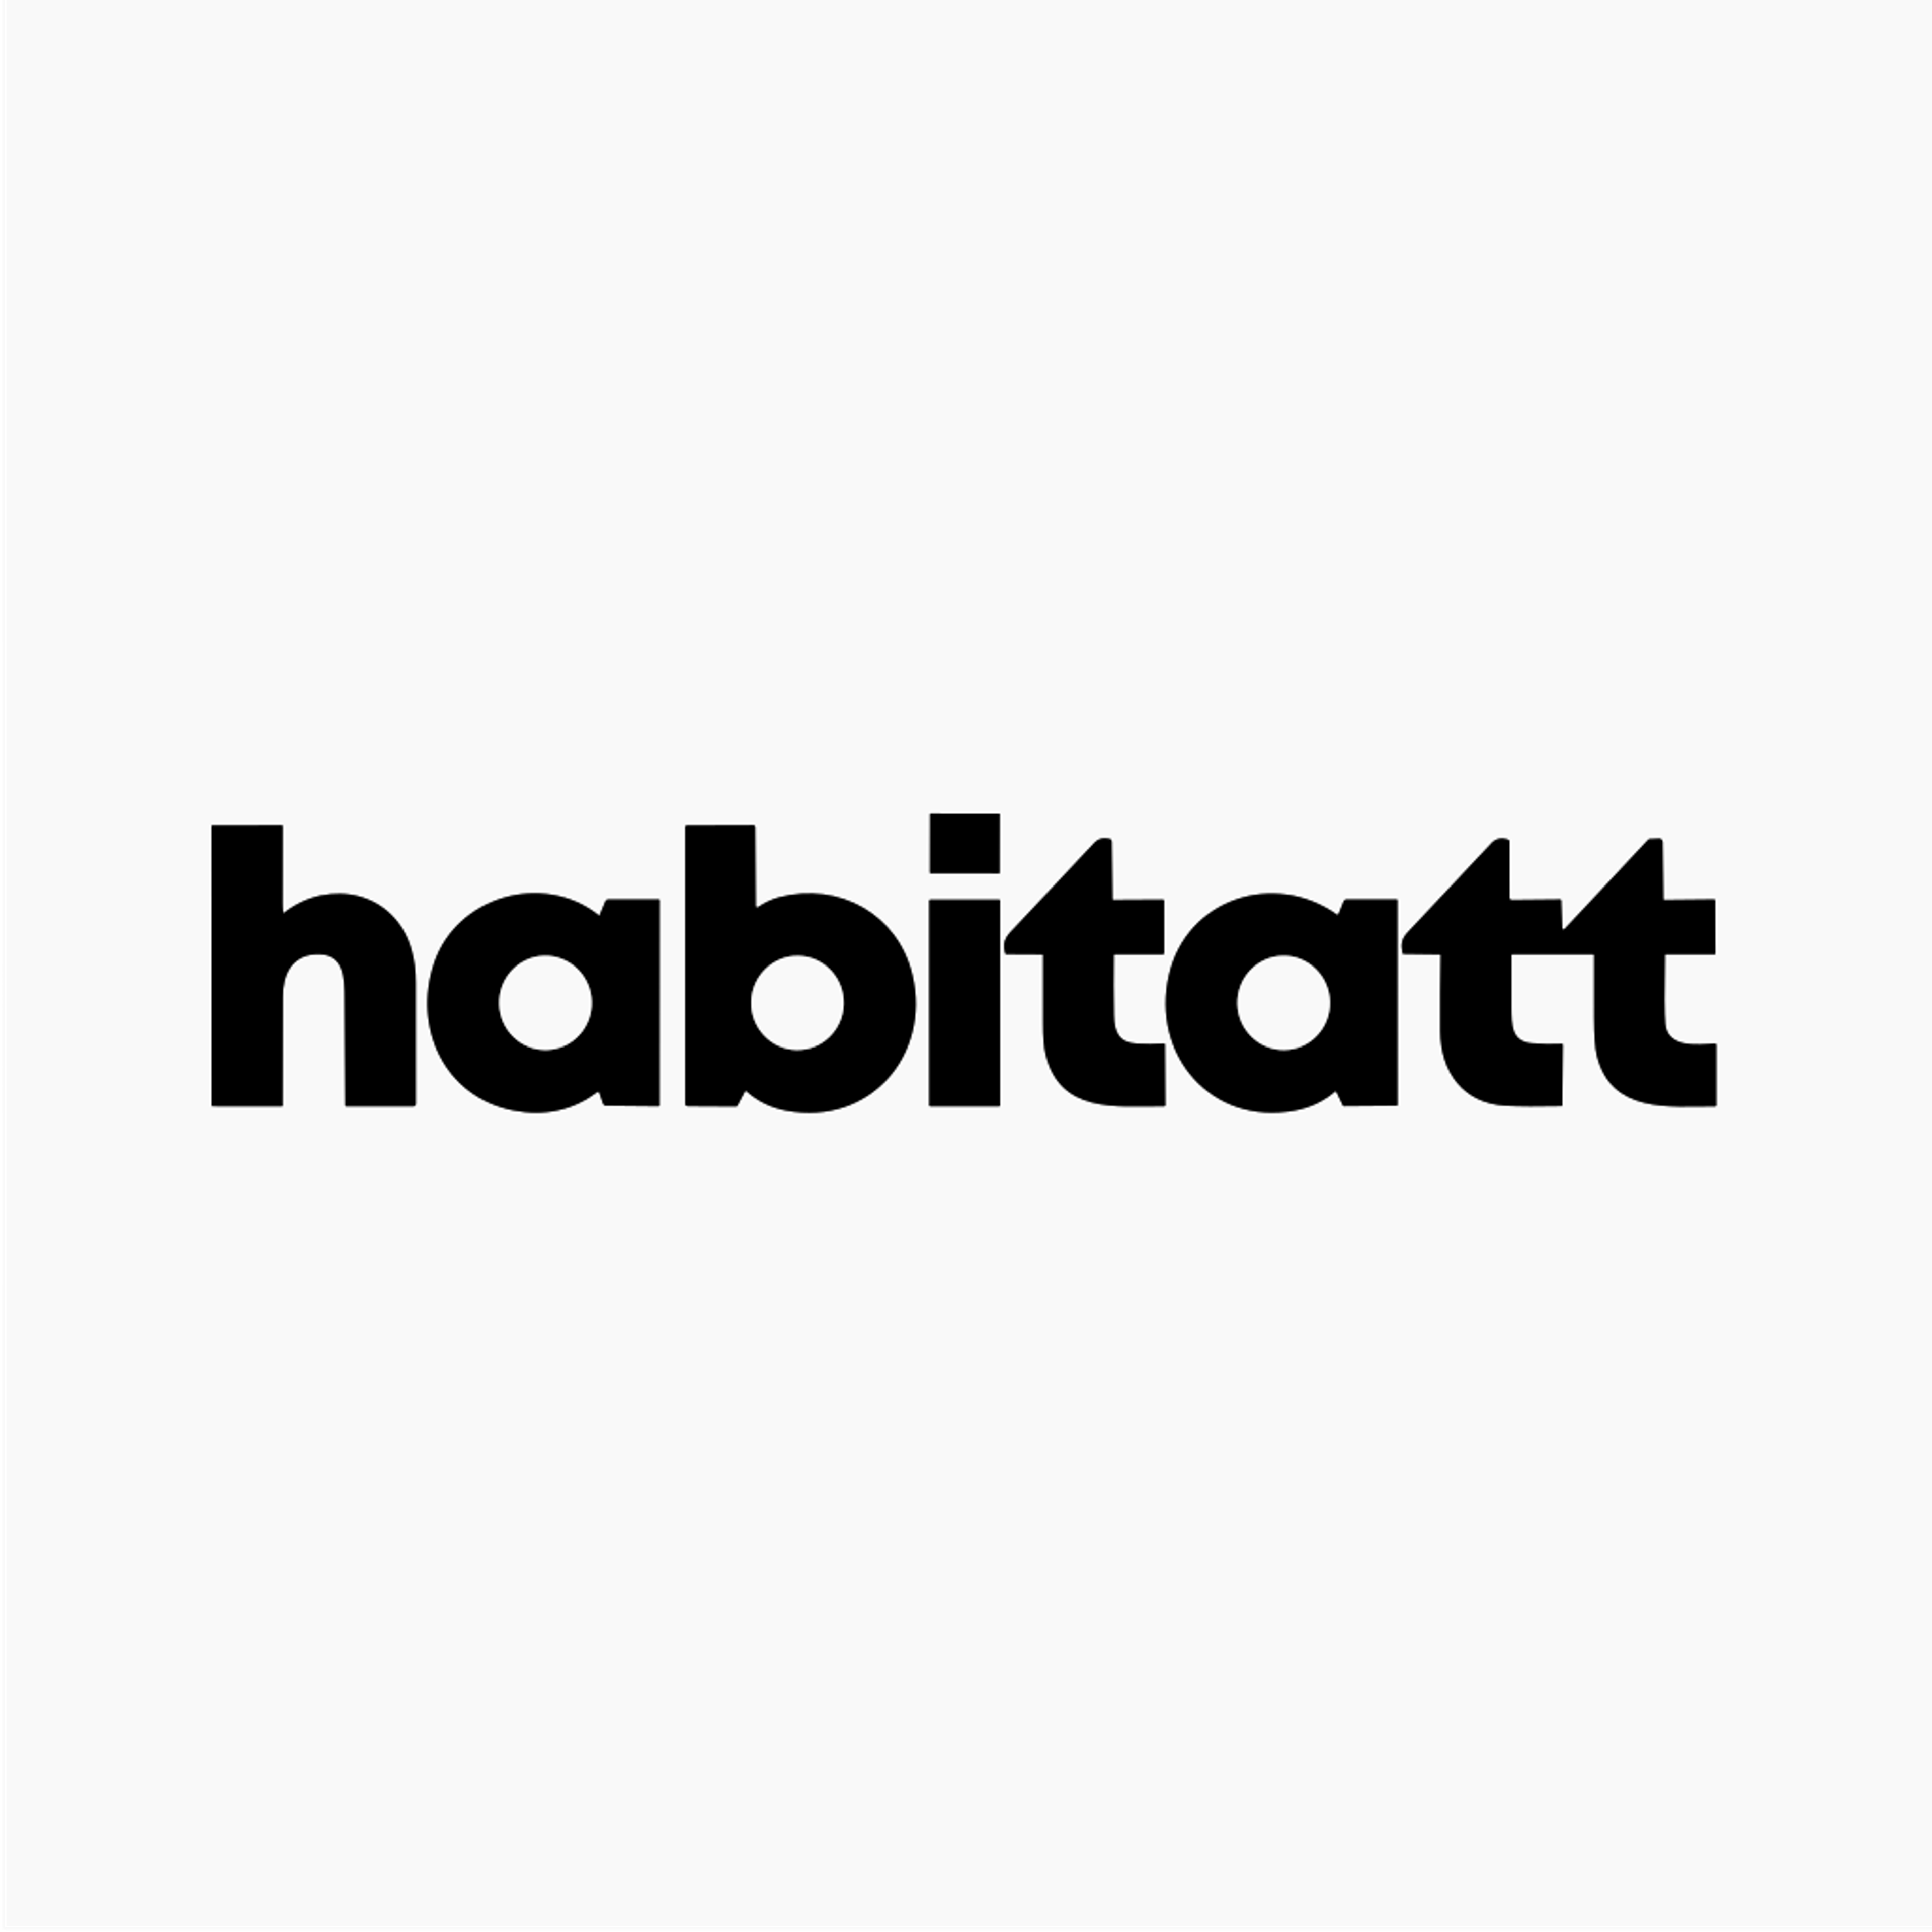 the habitatt